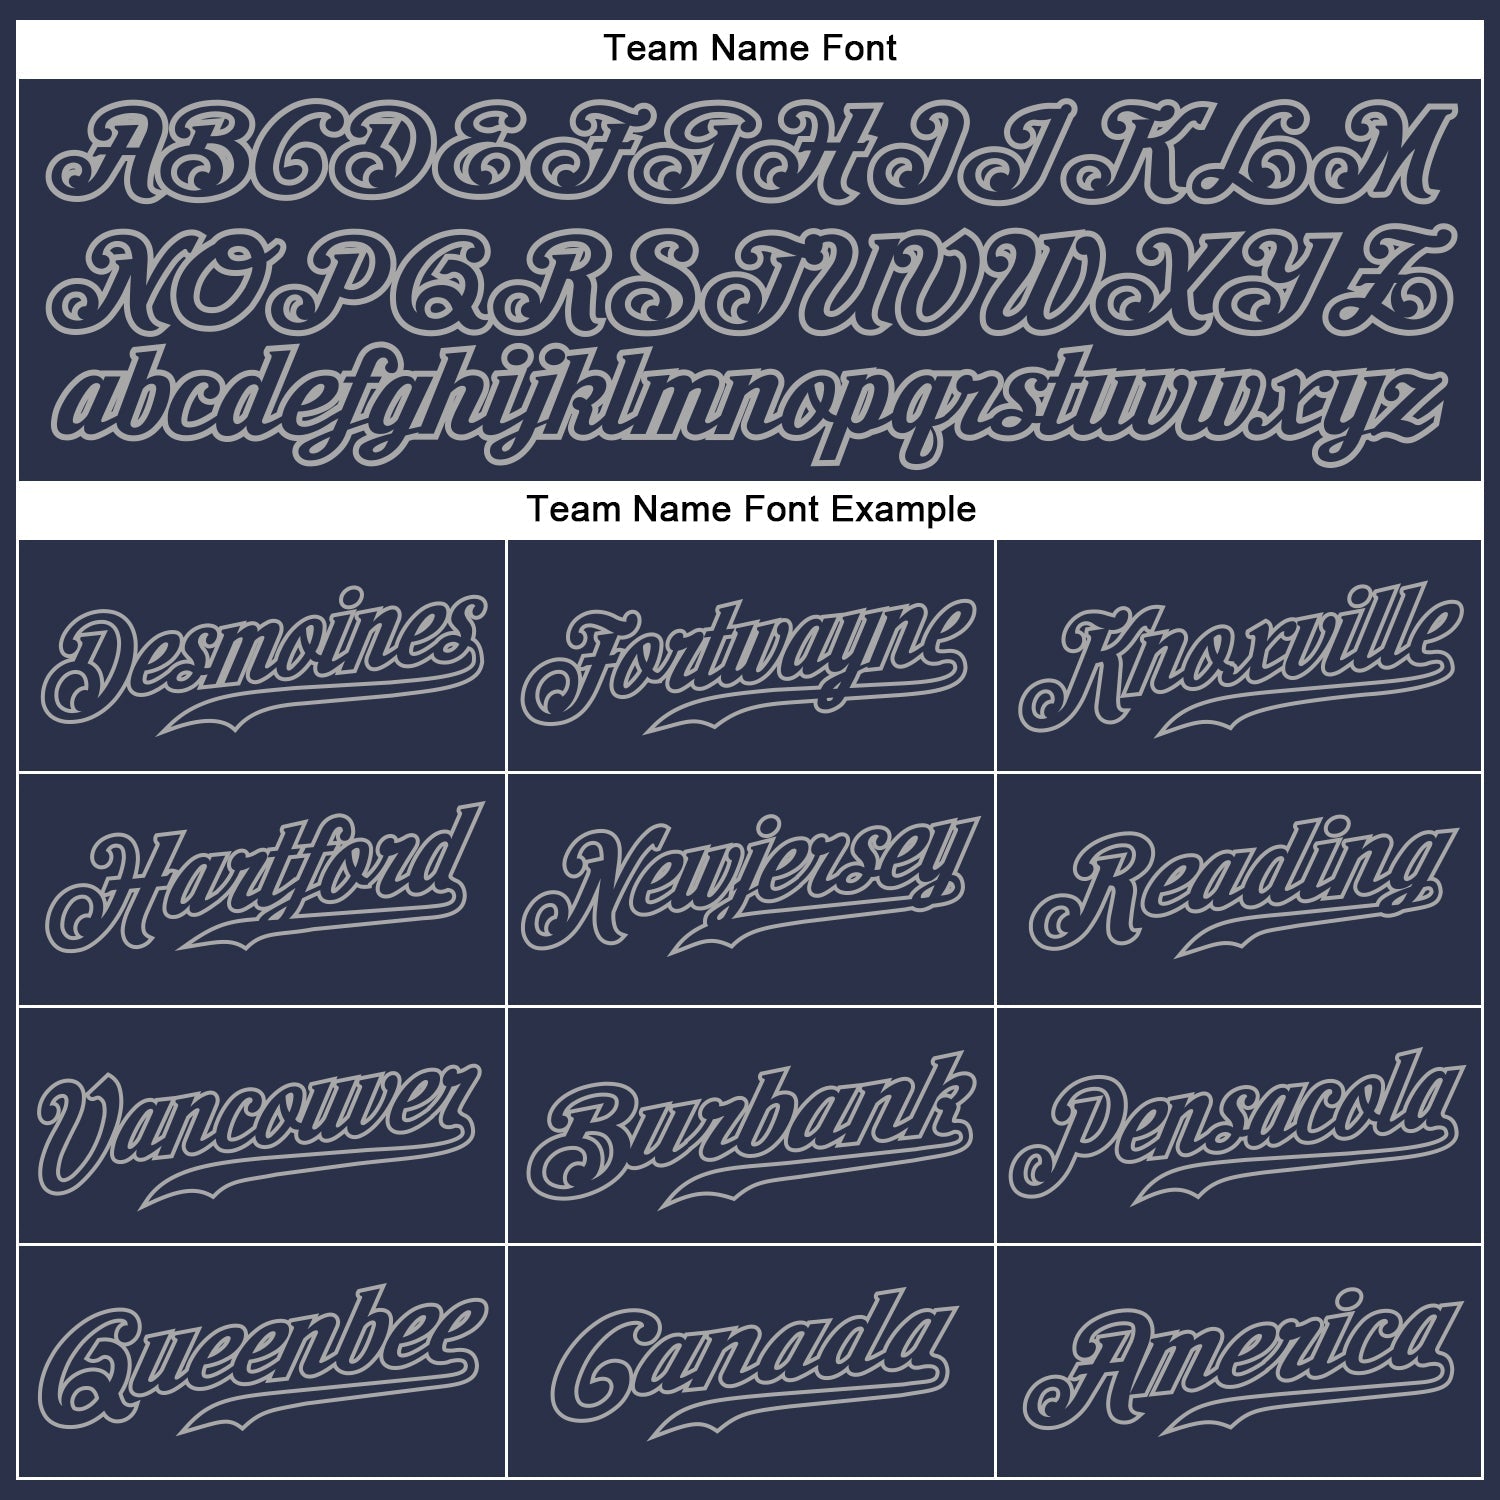 Benutzerdefiniertes, authentisches Baseball-Trikot in Marineblau und Grau